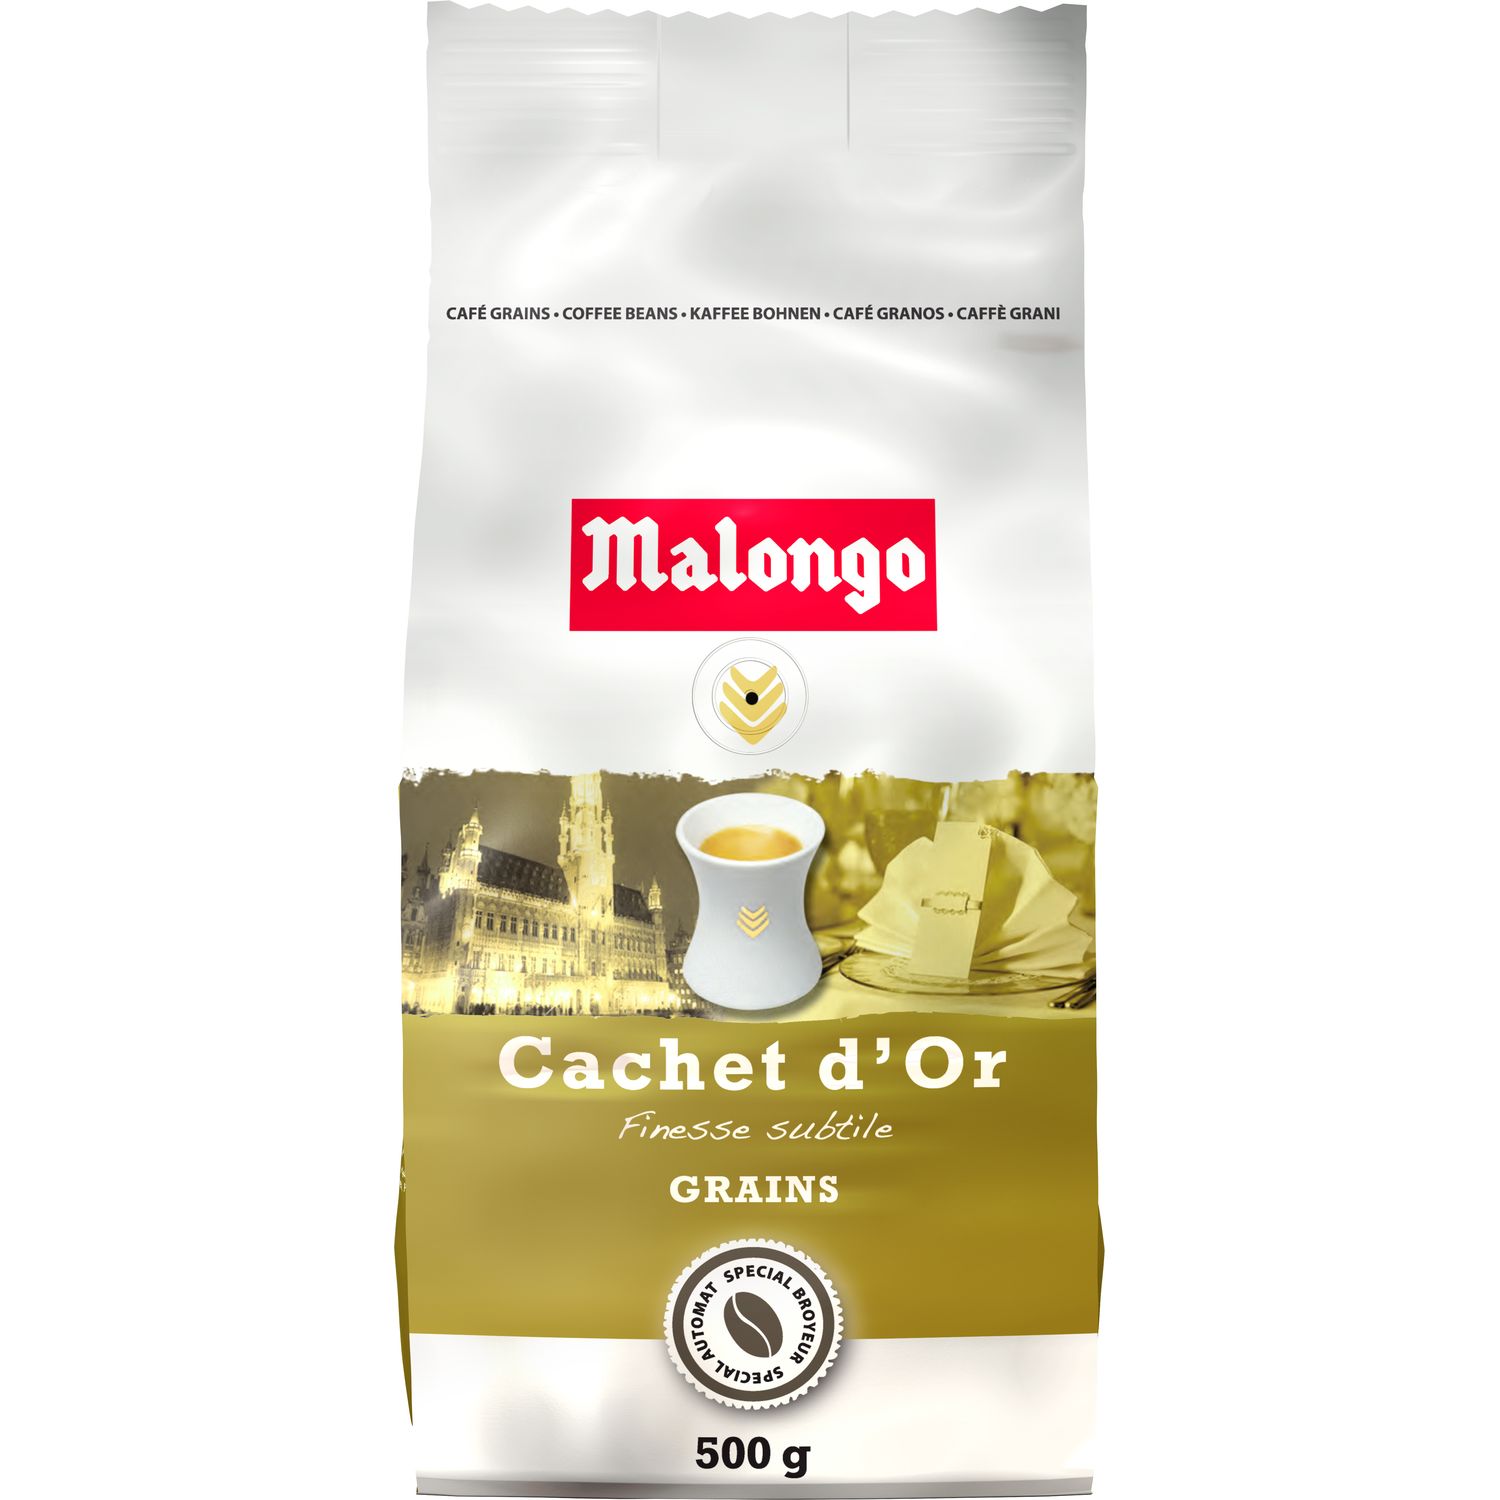 MALONGO Malongo café en grains cachet d'or 500g pas cher 